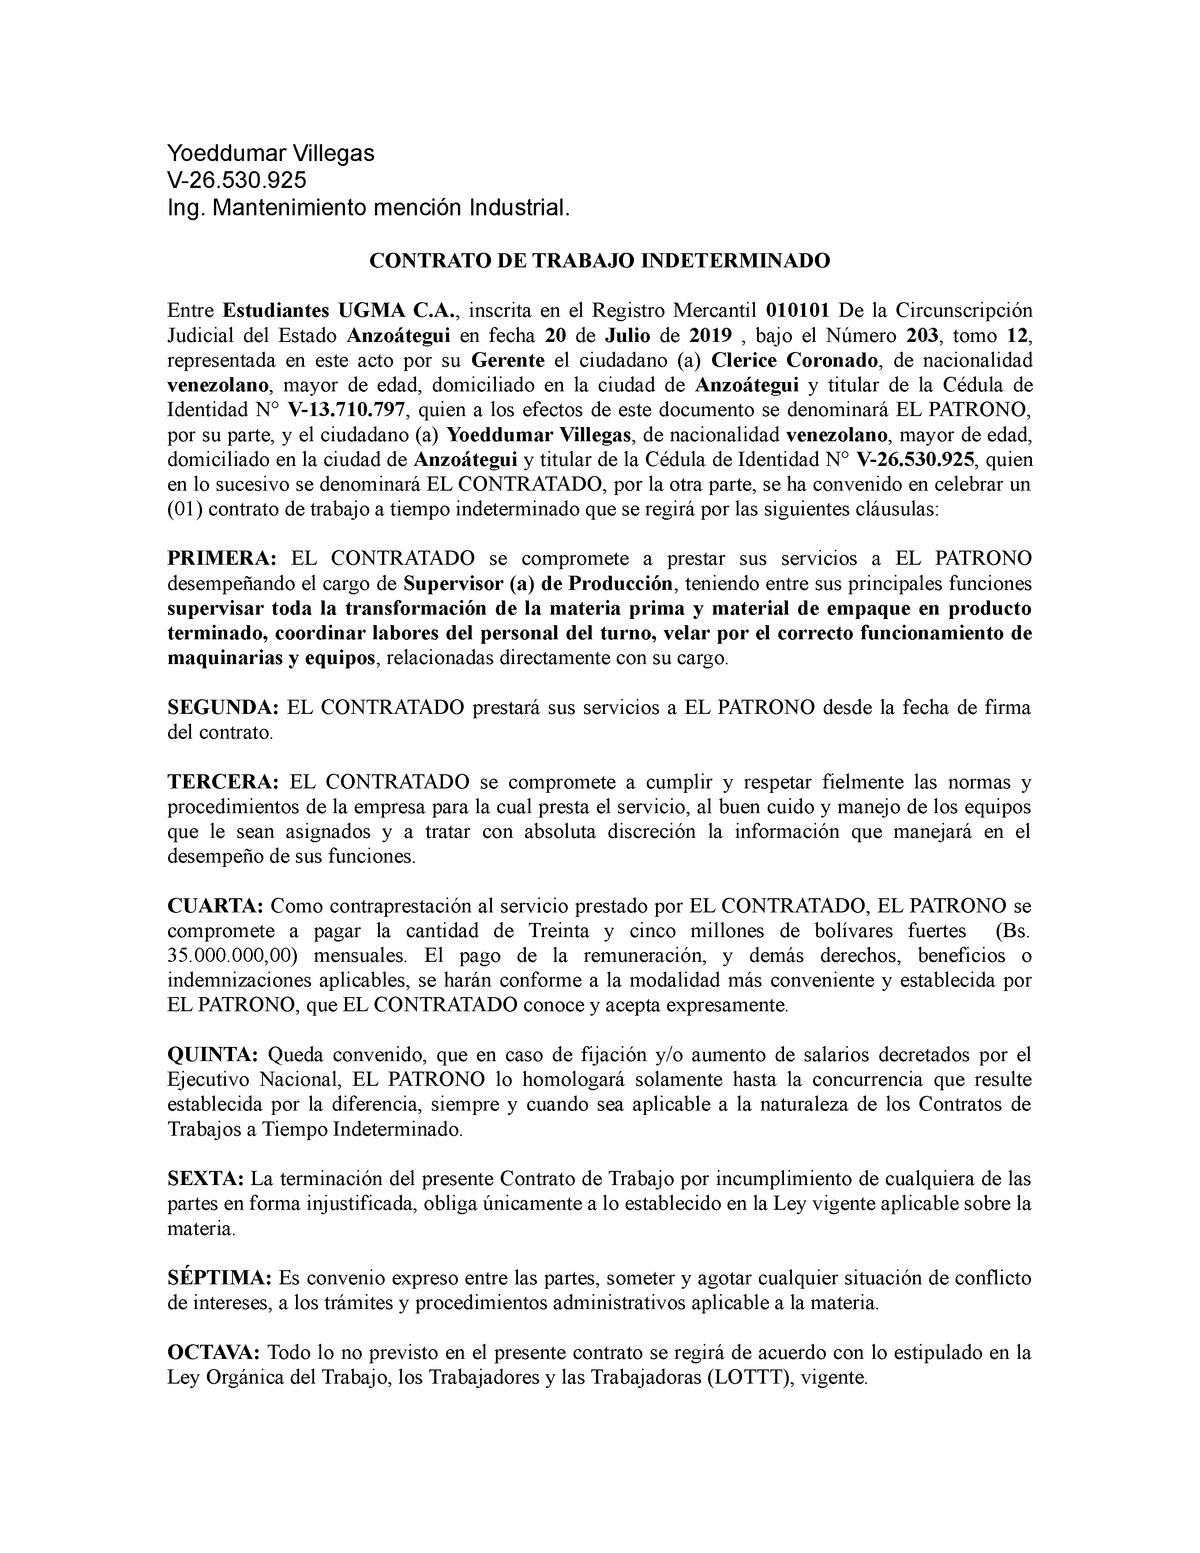 Ejemplo de contrato de trabajo en Venezuela - Yoeddumar Villegas V-26. Ing.  Mantenimiento mención - Studocu